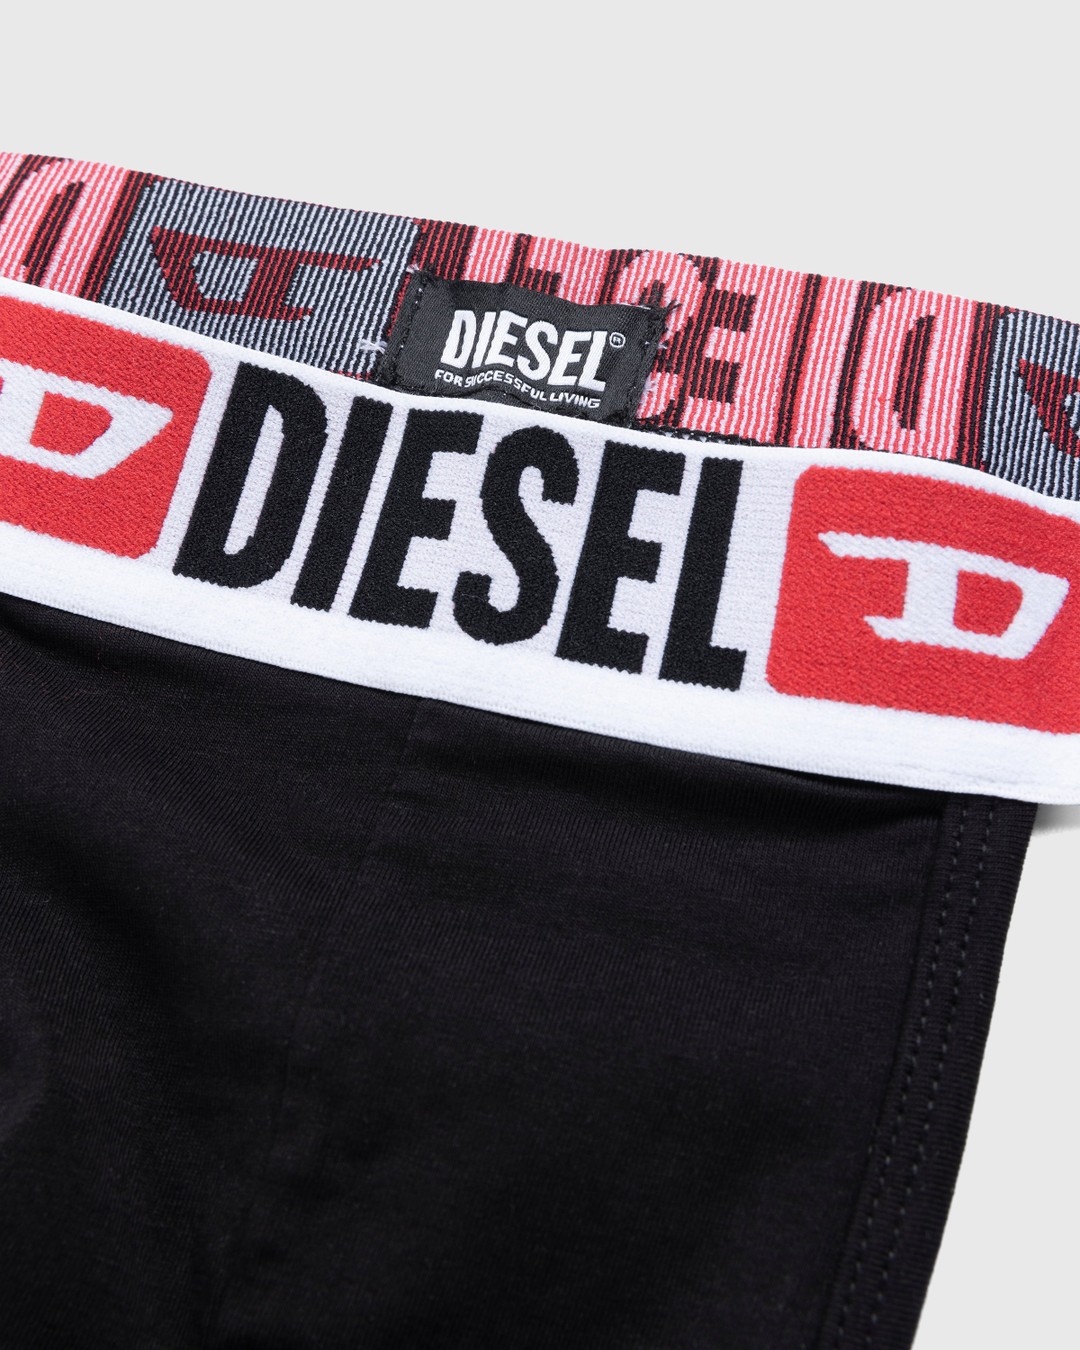 Diesel – Umbr-Jocky Three-Pack Jockstraps White - Underwear & Loungewear - White - Image 5